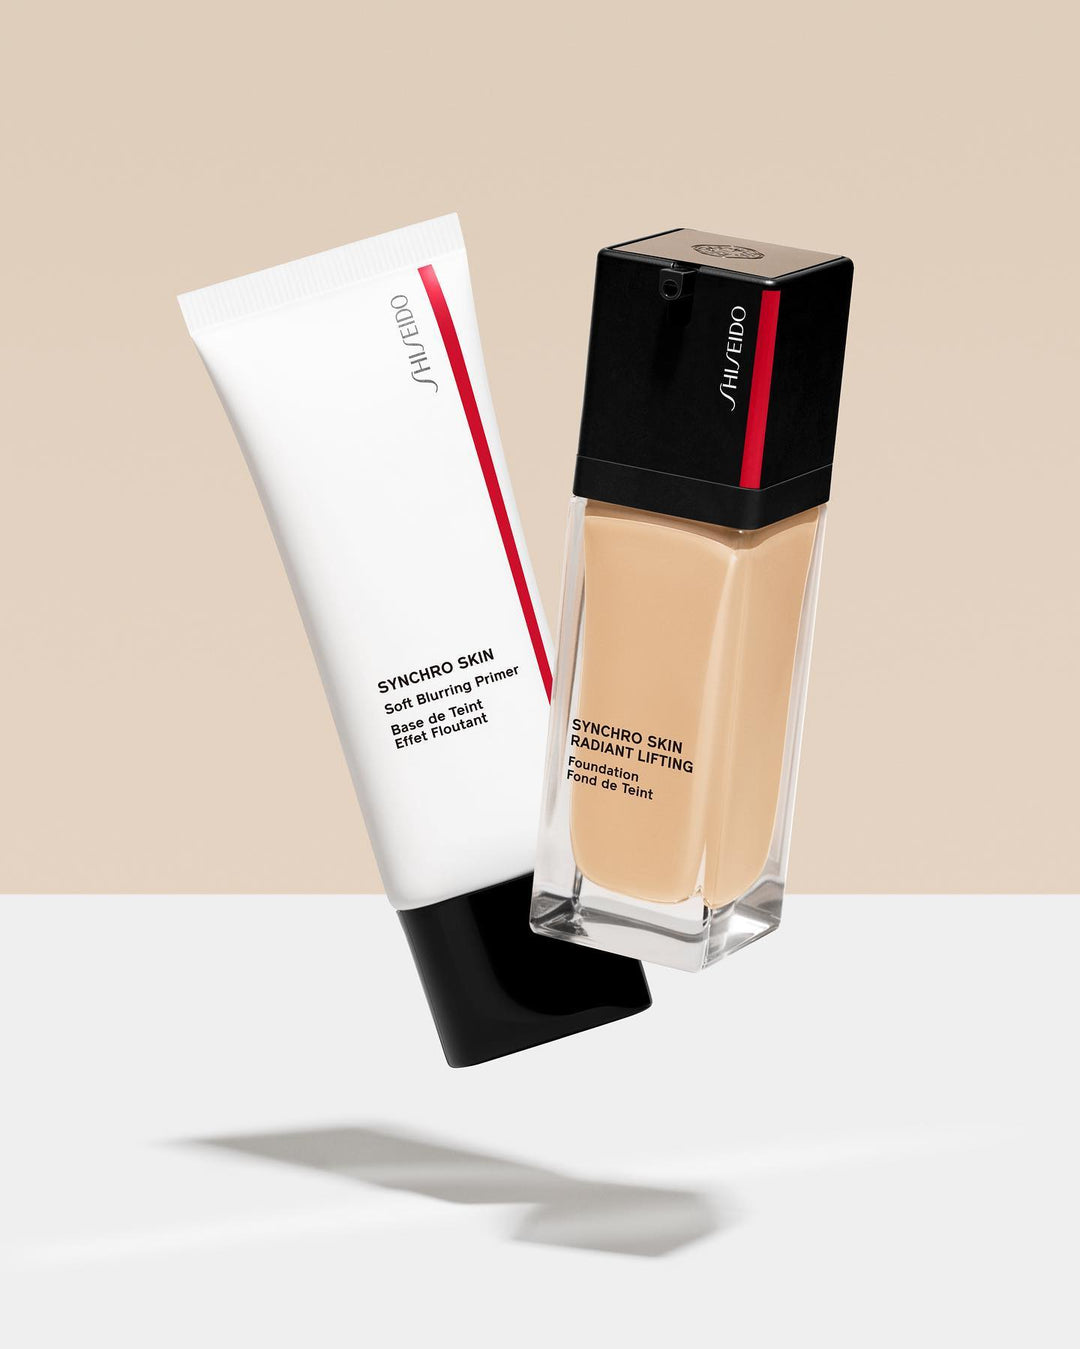 Kem Lót Shiseido Synchro Skin Soft Blurring Primer - Kallos Vietnam